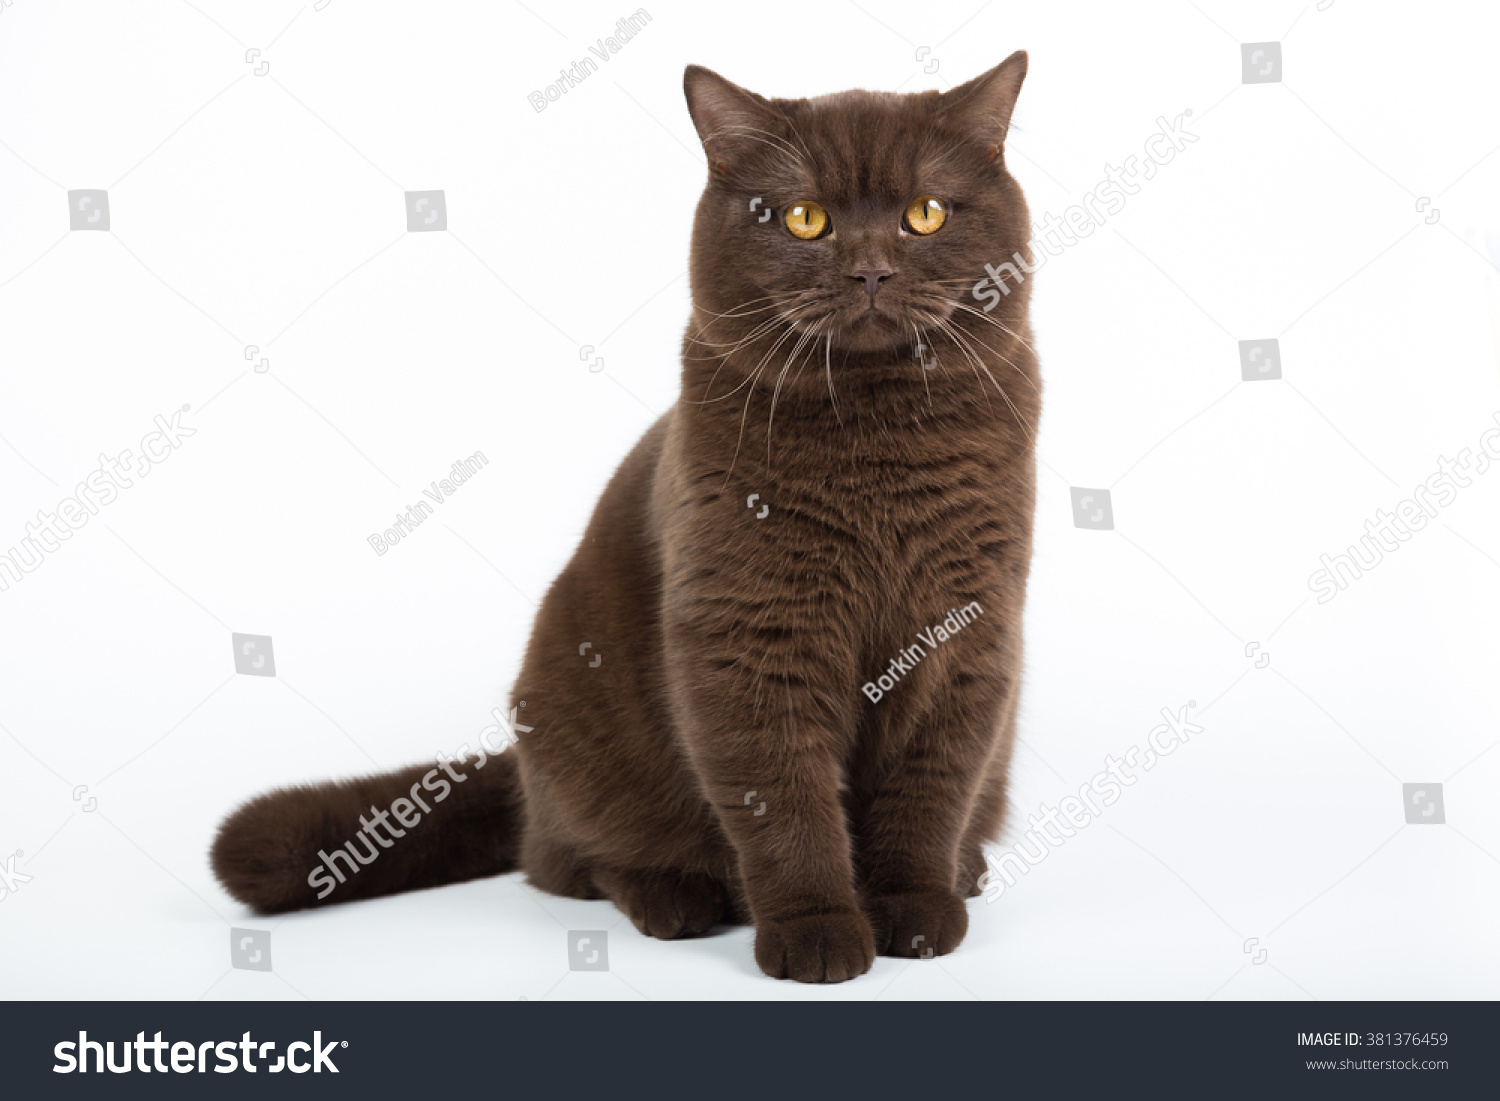 Британский короткошерстный кот шоколадного окраса